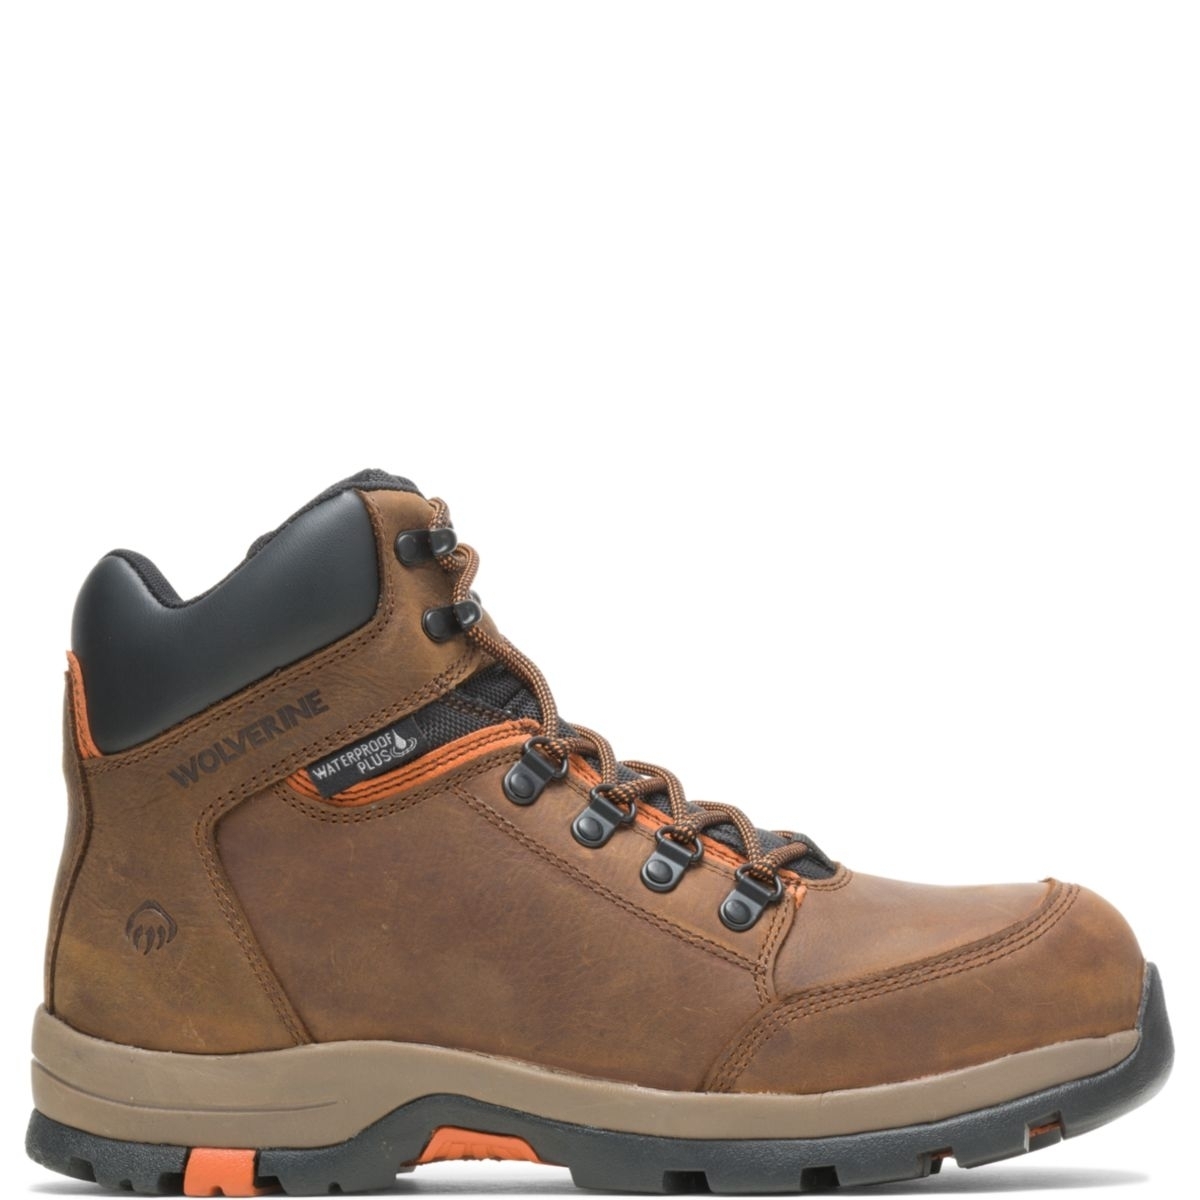 WOLVERINE Men's Grayson Steel Toe Waterproof Work Boot Brown - W211043 BROWN - BROWN, 11 X-Wide